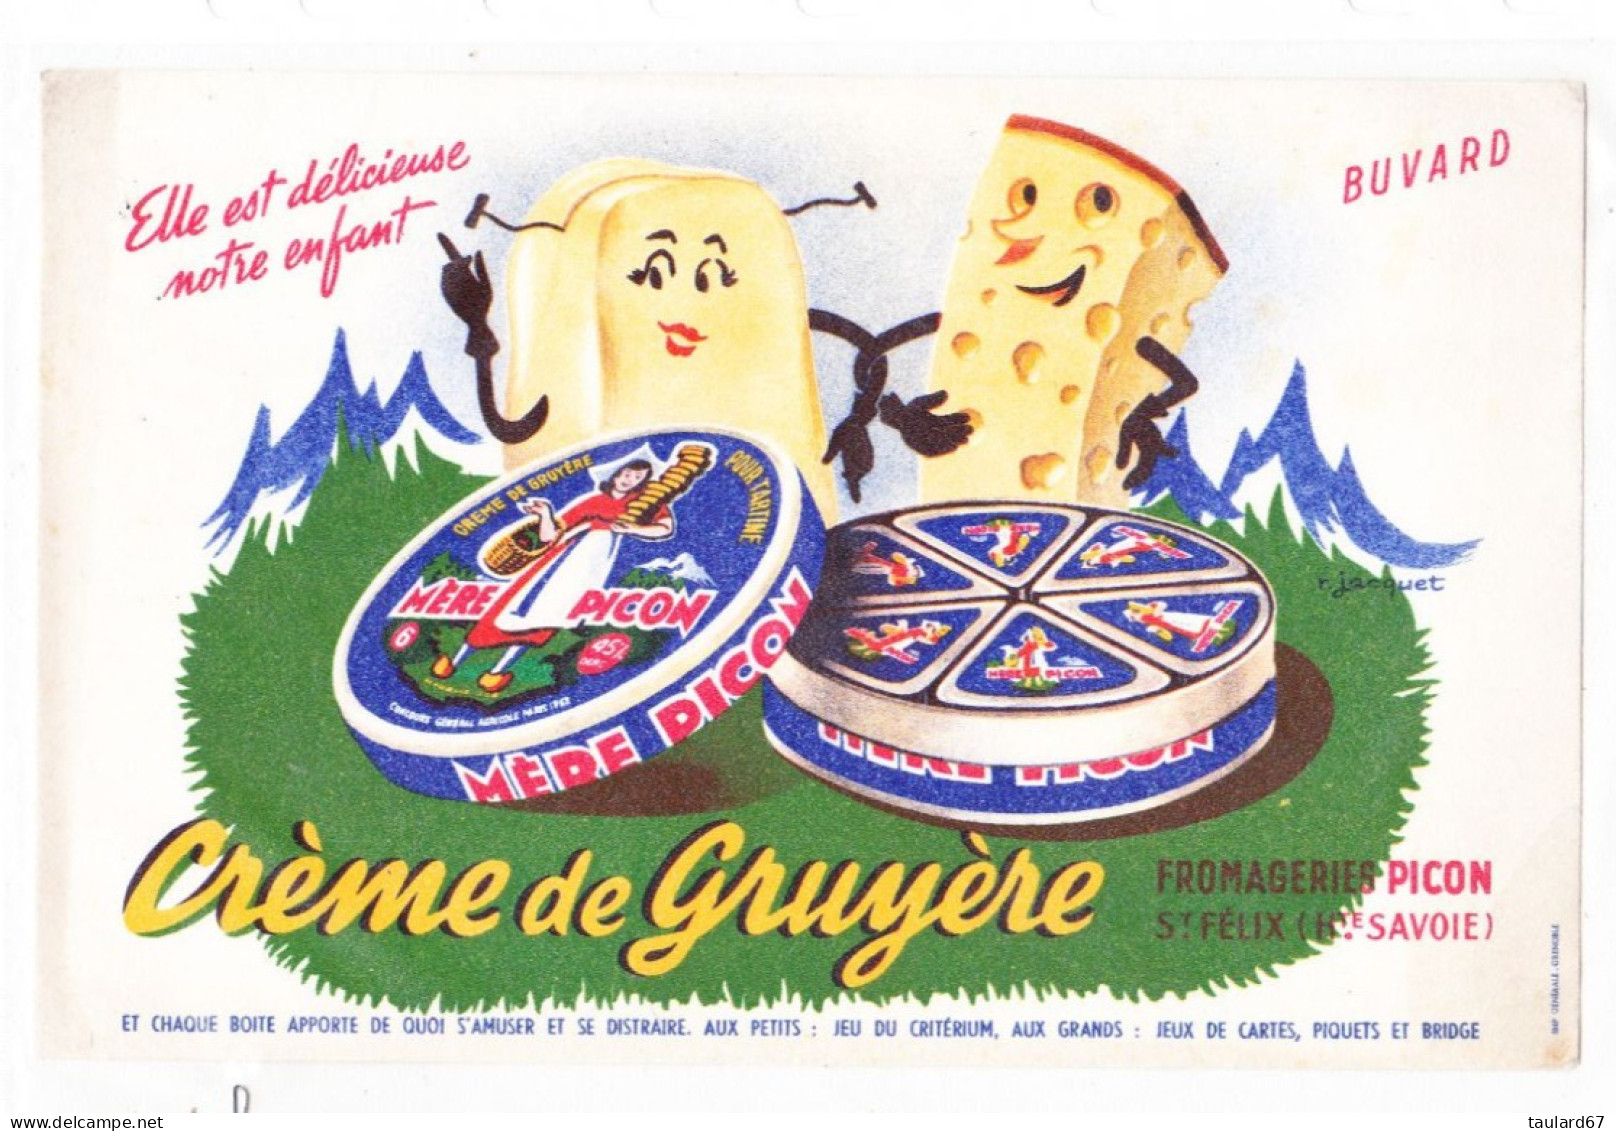 Buvard Crème De Gruyère Mère Picon Fromagerie Picon St Félix Hte Savoie - G